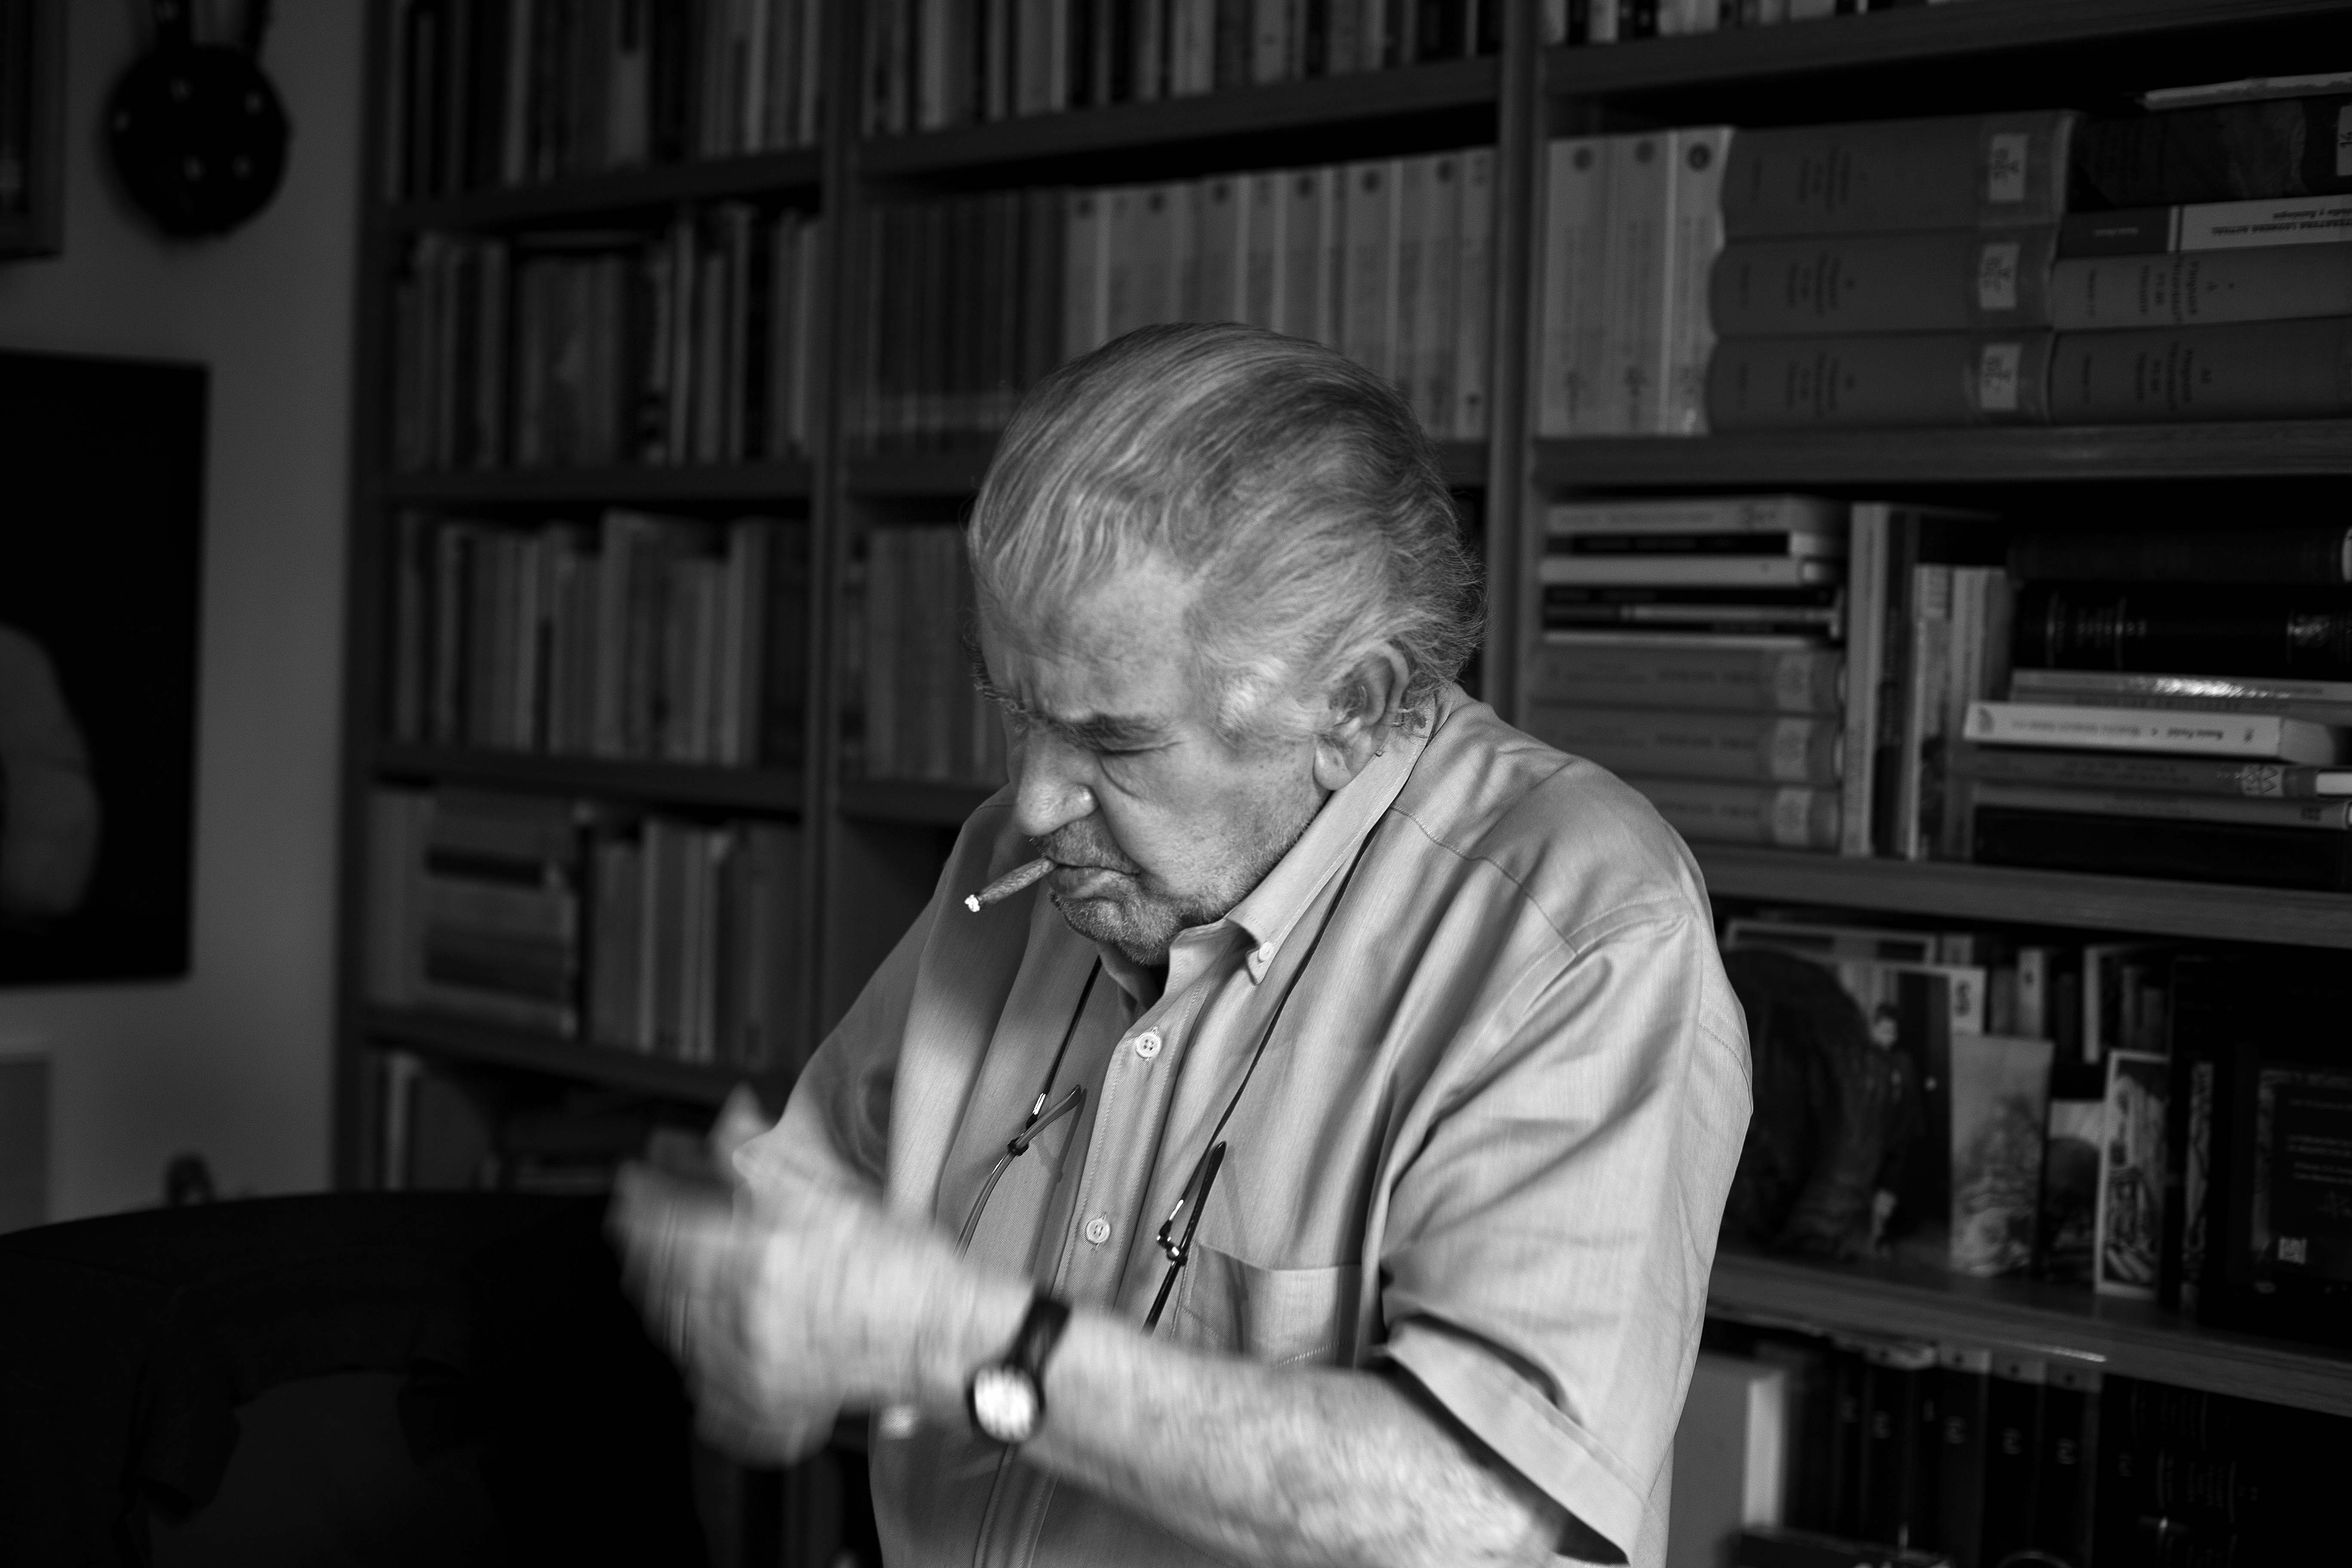 El poeta y escritor Antonio Gamoneda encendiendo un cigarro.| JOSÉ RAMÓN VEGA